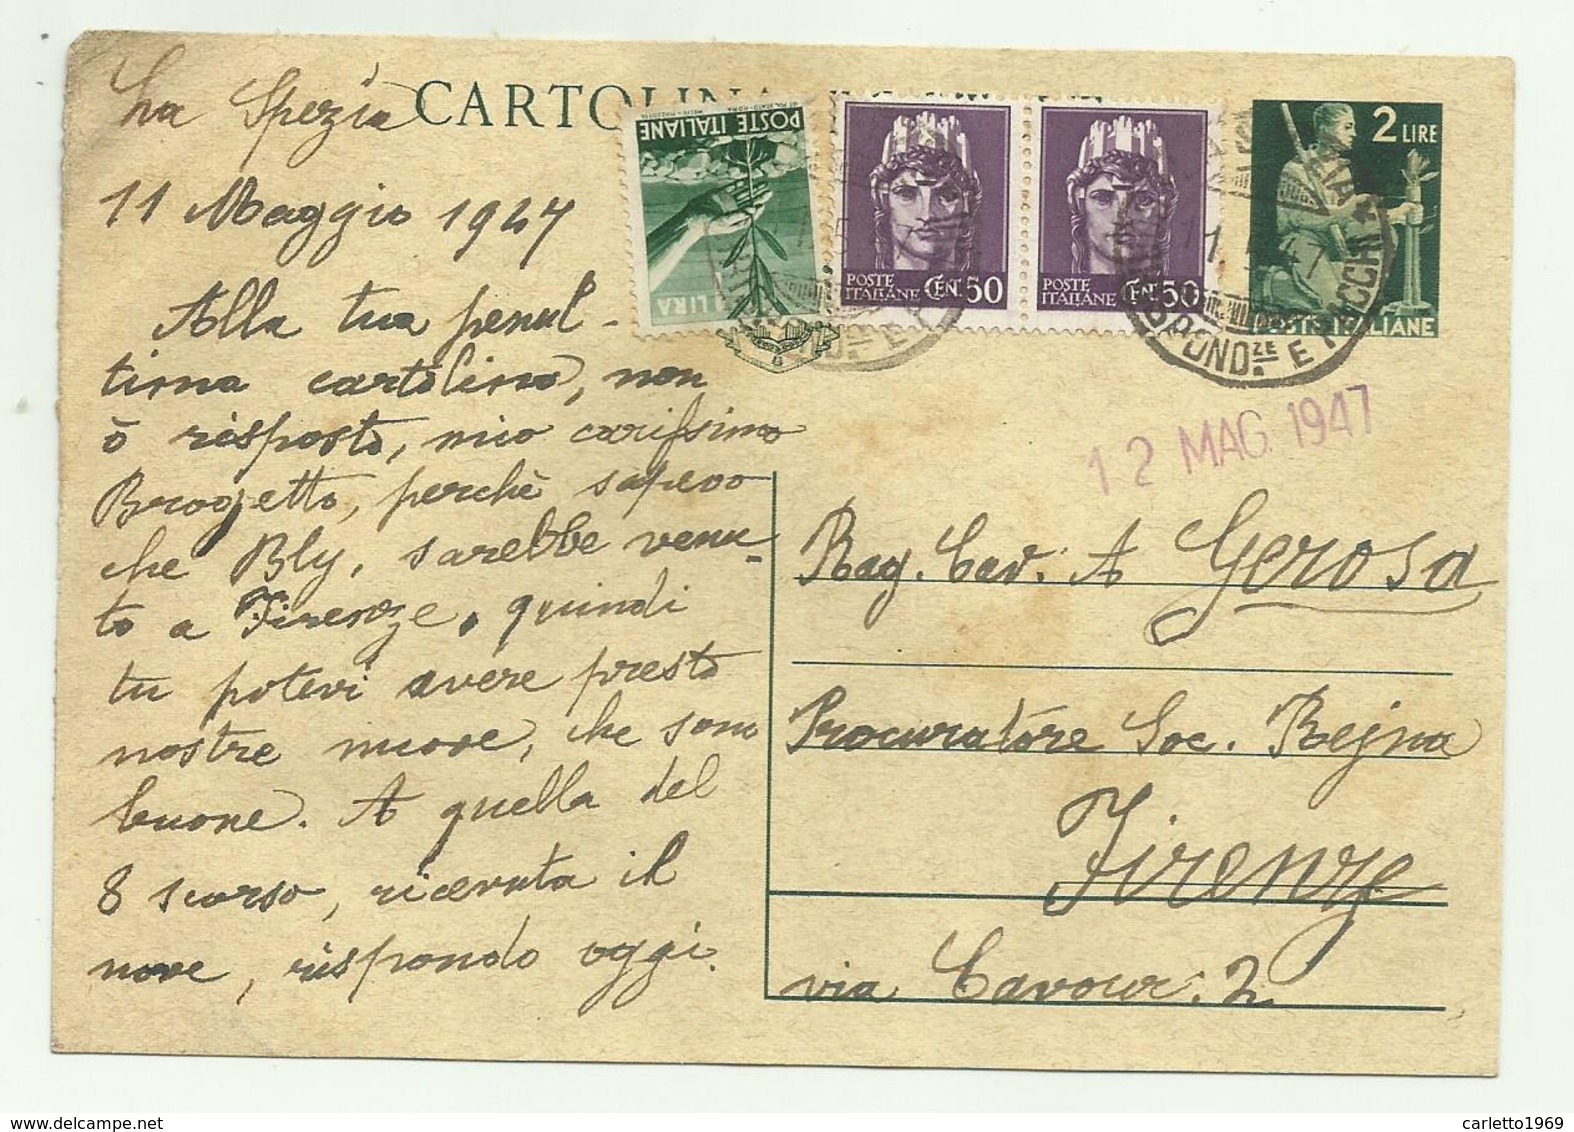 CARTOLINA POSTALE LIRE 2  CON AGGIUNTA DI 1 LIRA E 2 DA CENT. 50 - 1947  FG - Poststempel